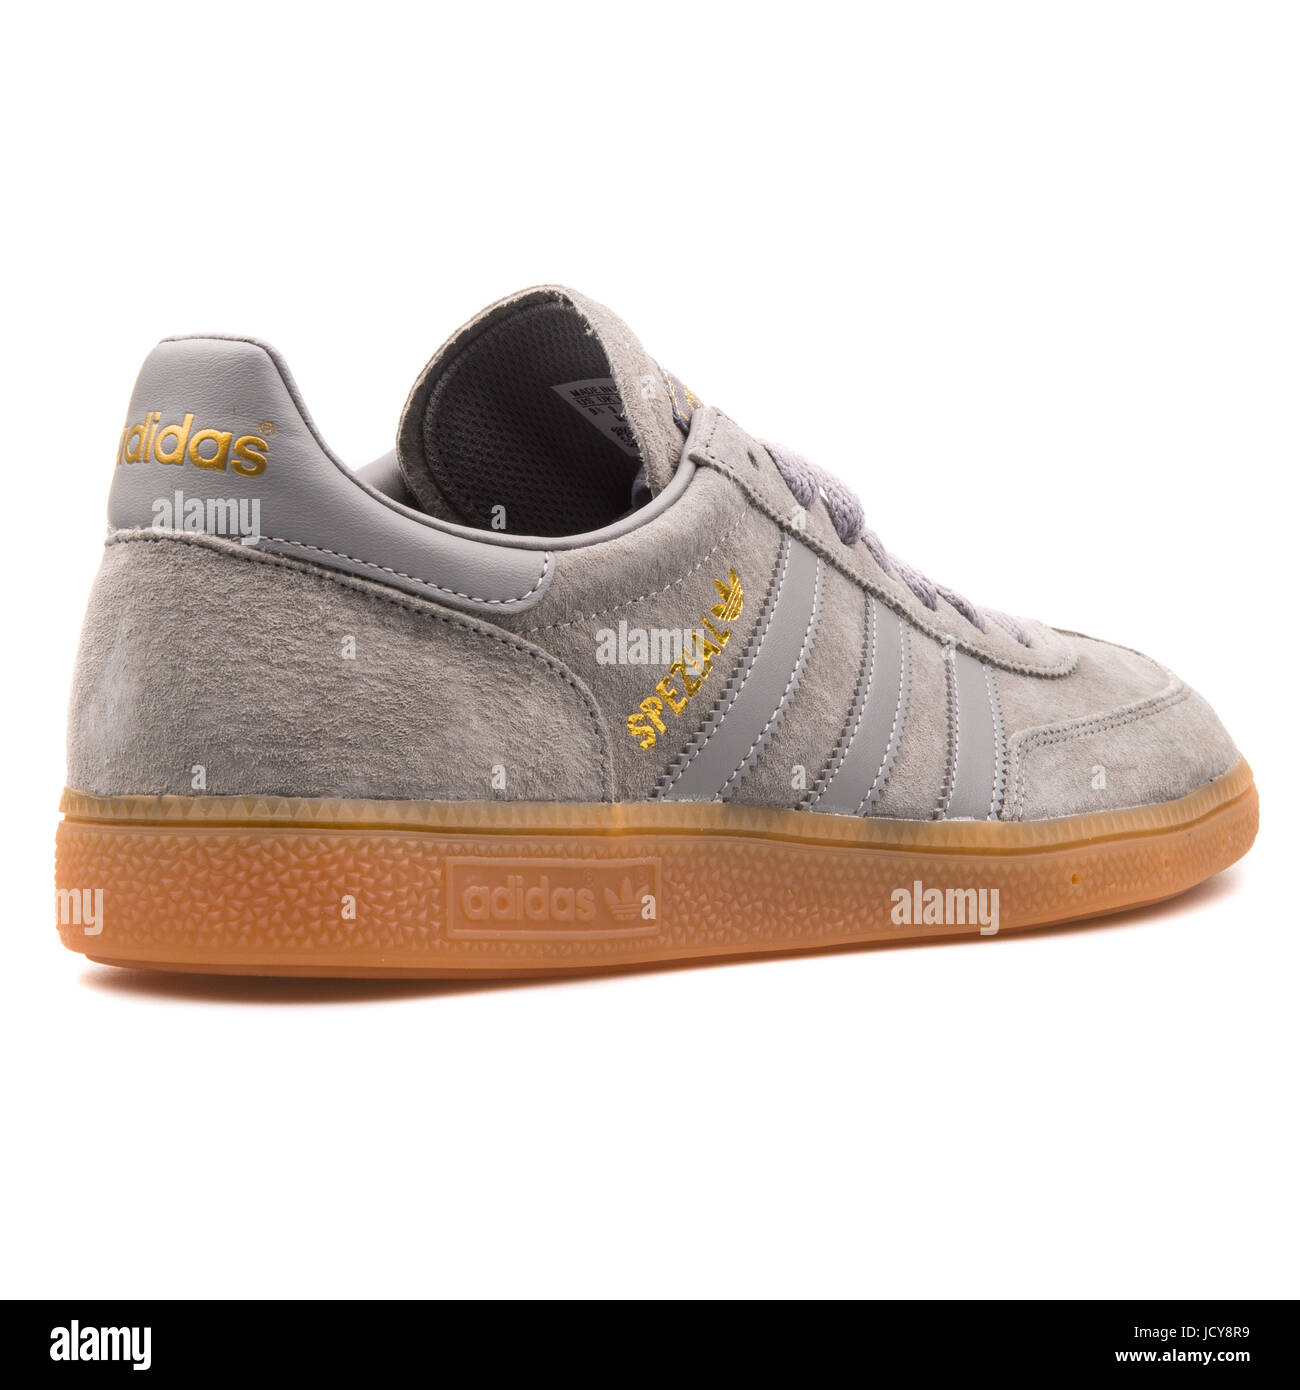 Adidas Spezial Grey Men's Sports Shoes - B35207 Stock Photo - Alamy